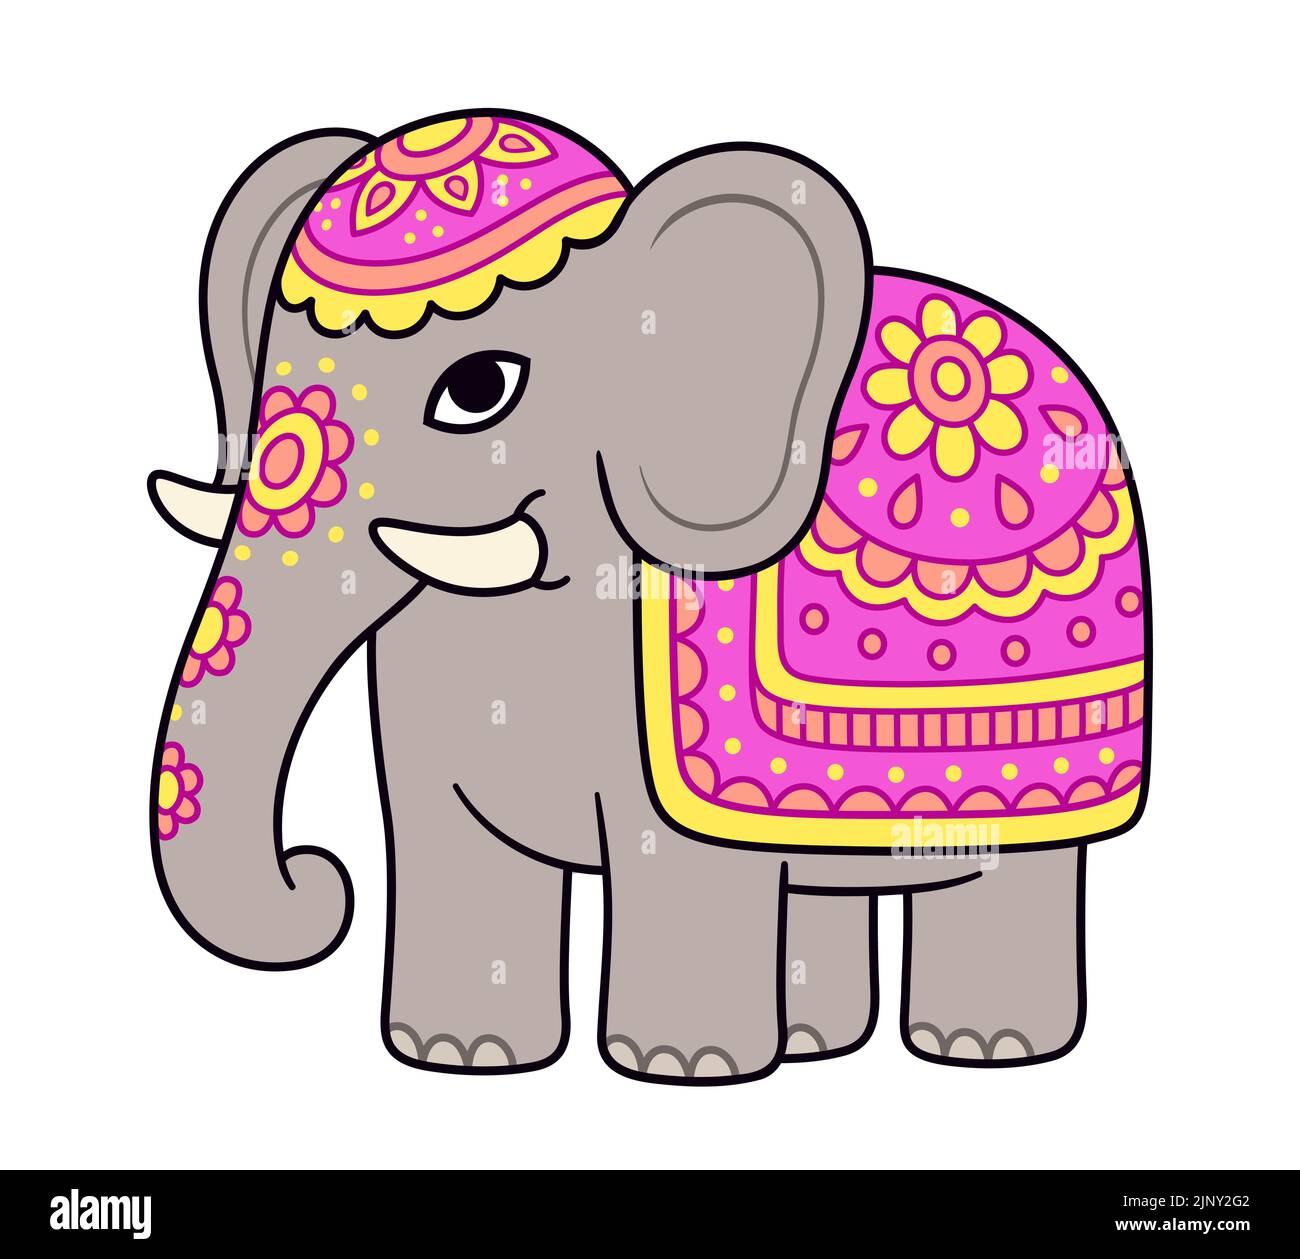 Niedliche Cartoon dekoriert Elefant Zeichnung. Indischer Elefant mit bemalten Blumen und buntem Deckel. Vektorgrafik Clip Art Illustration. Stock Vektor